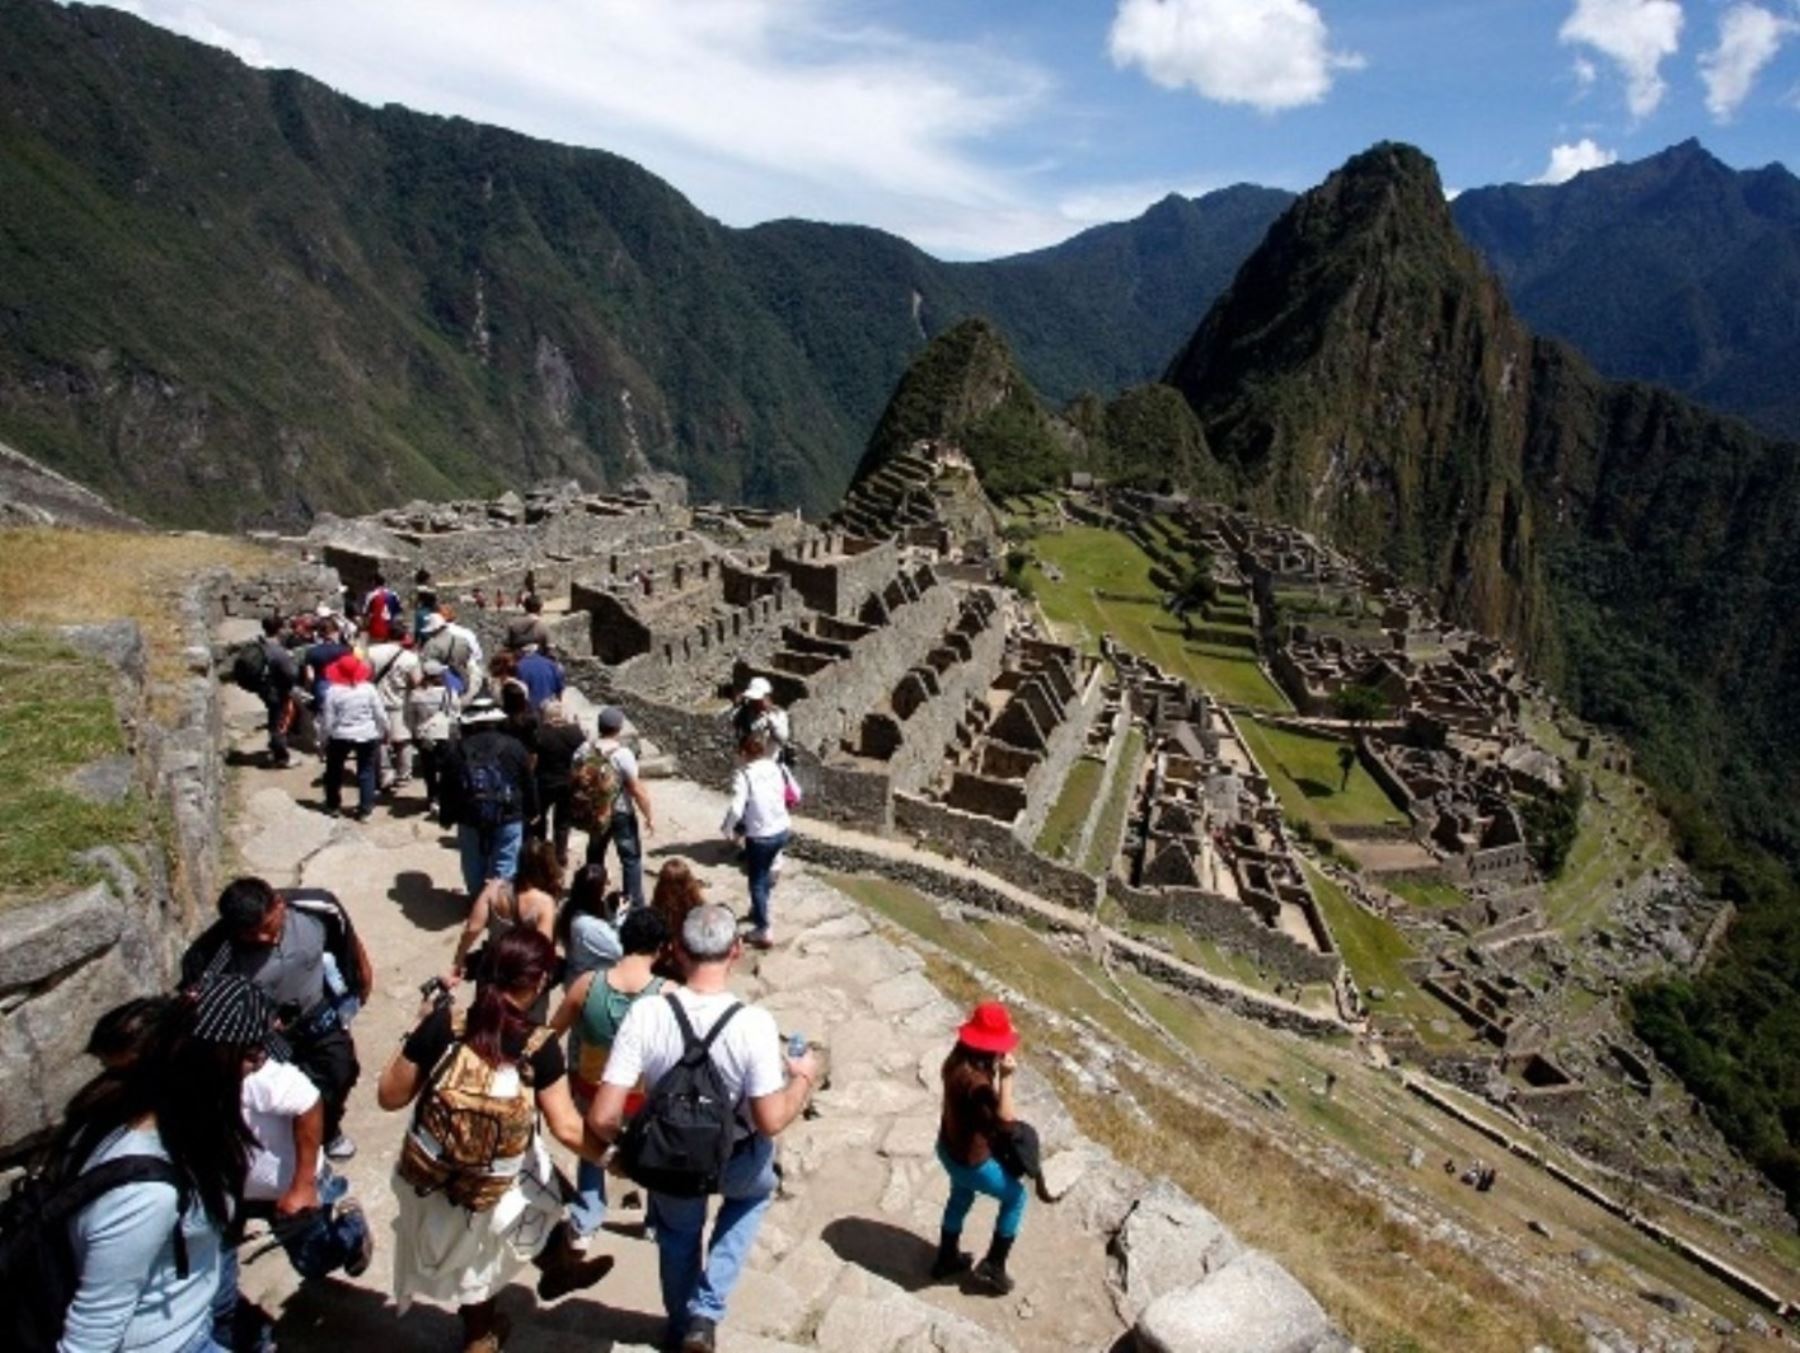 En cuatro horarios establecidos (06:00, 07:00, 15:00 y 16:00 horas) la tarifa general para ingresar a Machu Picchu costará S/ 32 soles a partir del 1 de enero del 2024, anunció el Ministerio de Cultura. Los estudiantes y menores de edad pagarán S/ 16.